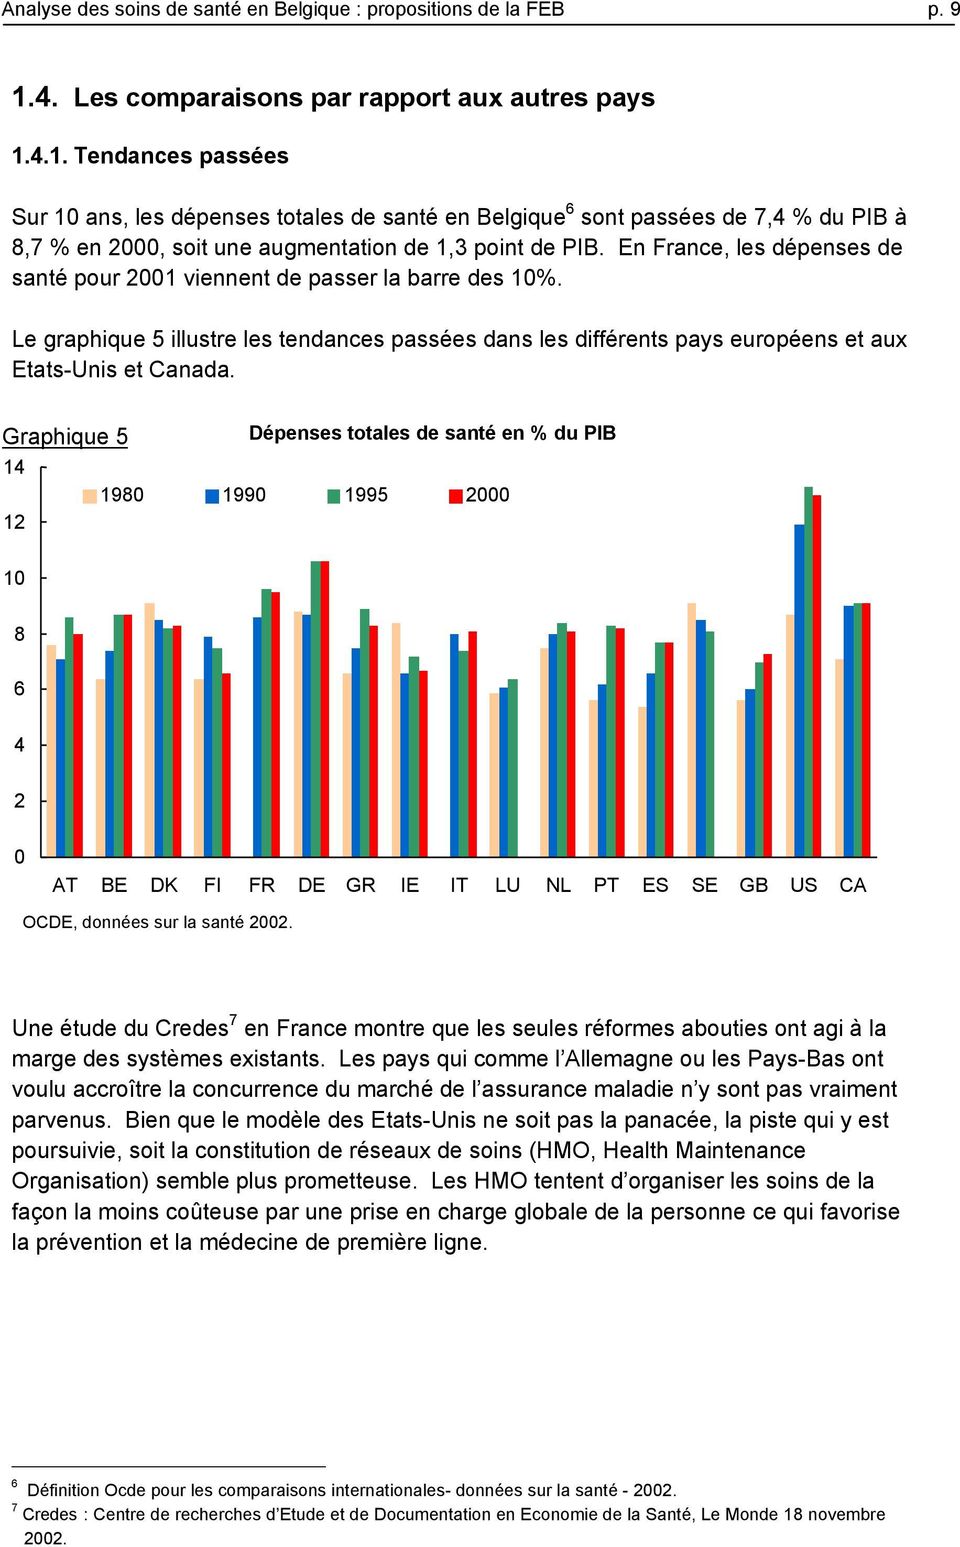 4.1. Tendances passées Sur 10 ans, les dépenses totales de santé en Belgique 6 sont passées de 7,4 % du PIB à 8,7 % en 2000, soit une augmentation de 1,3 point de PIB.